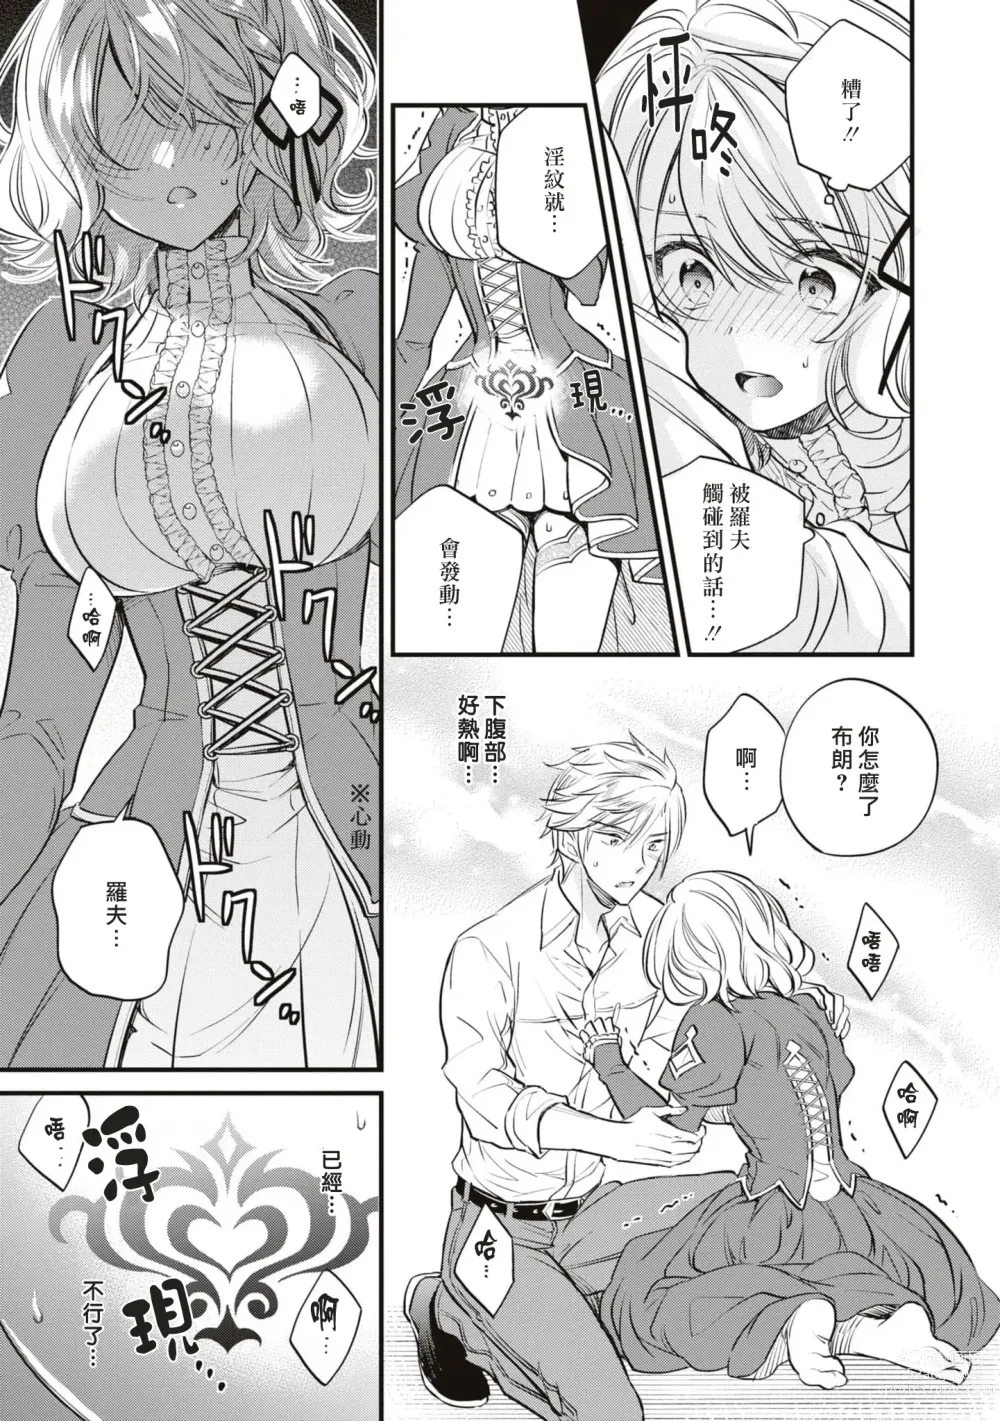 Page 16 of manga 不经意间帮助过的魔女向我报恩，所以被下了会自动朝喜欢的人走去，并会在碰触他时被施予淫纹的魔法。